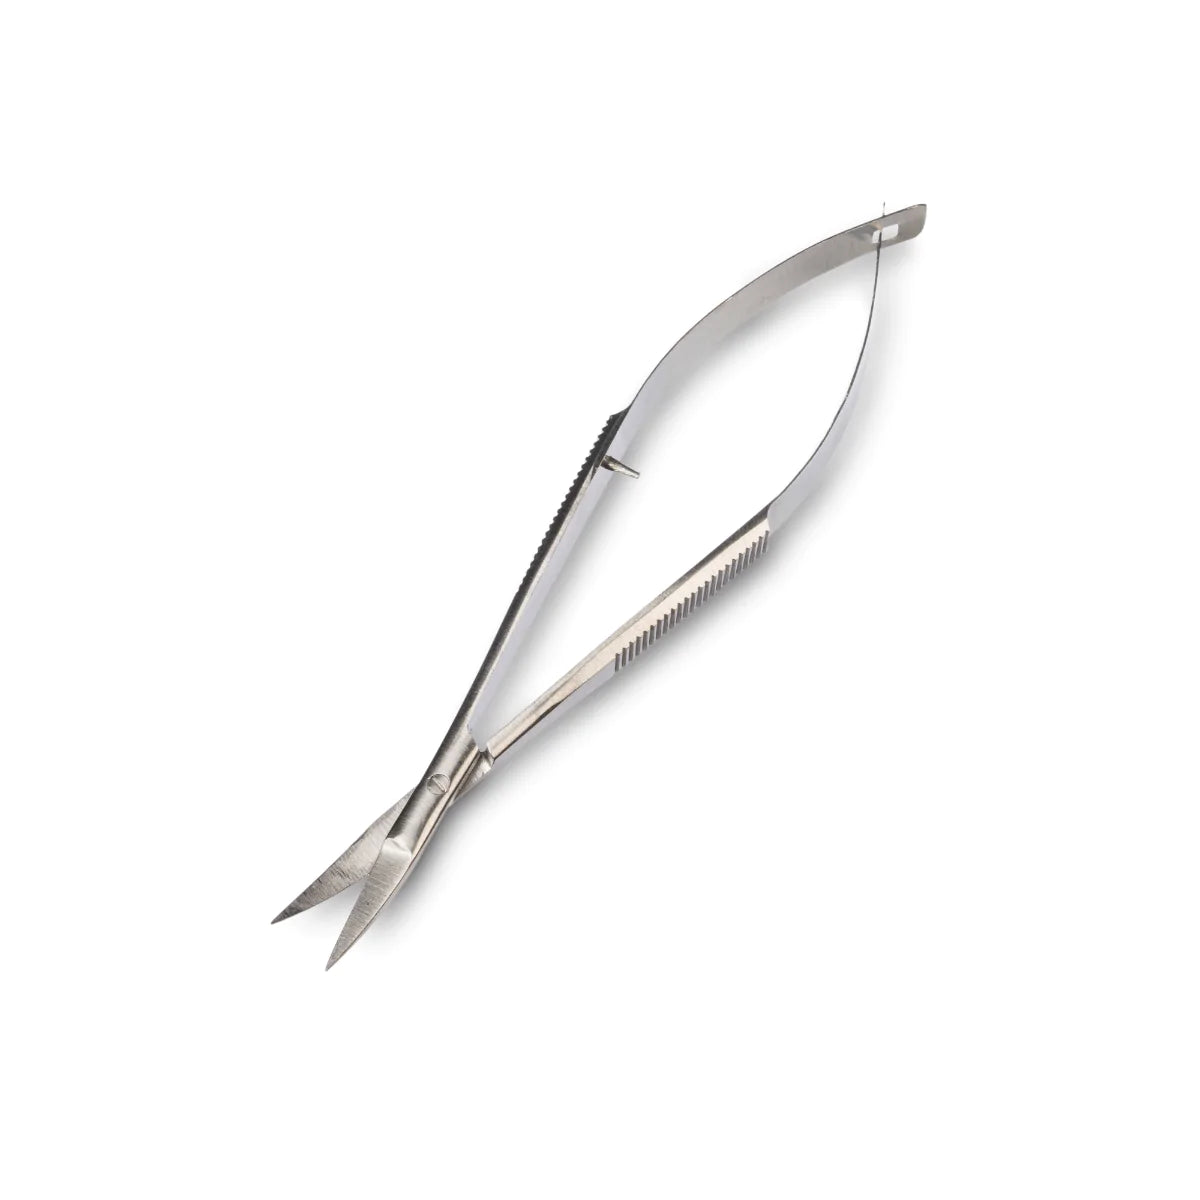 LEpro Curved Blade Precision Scissor